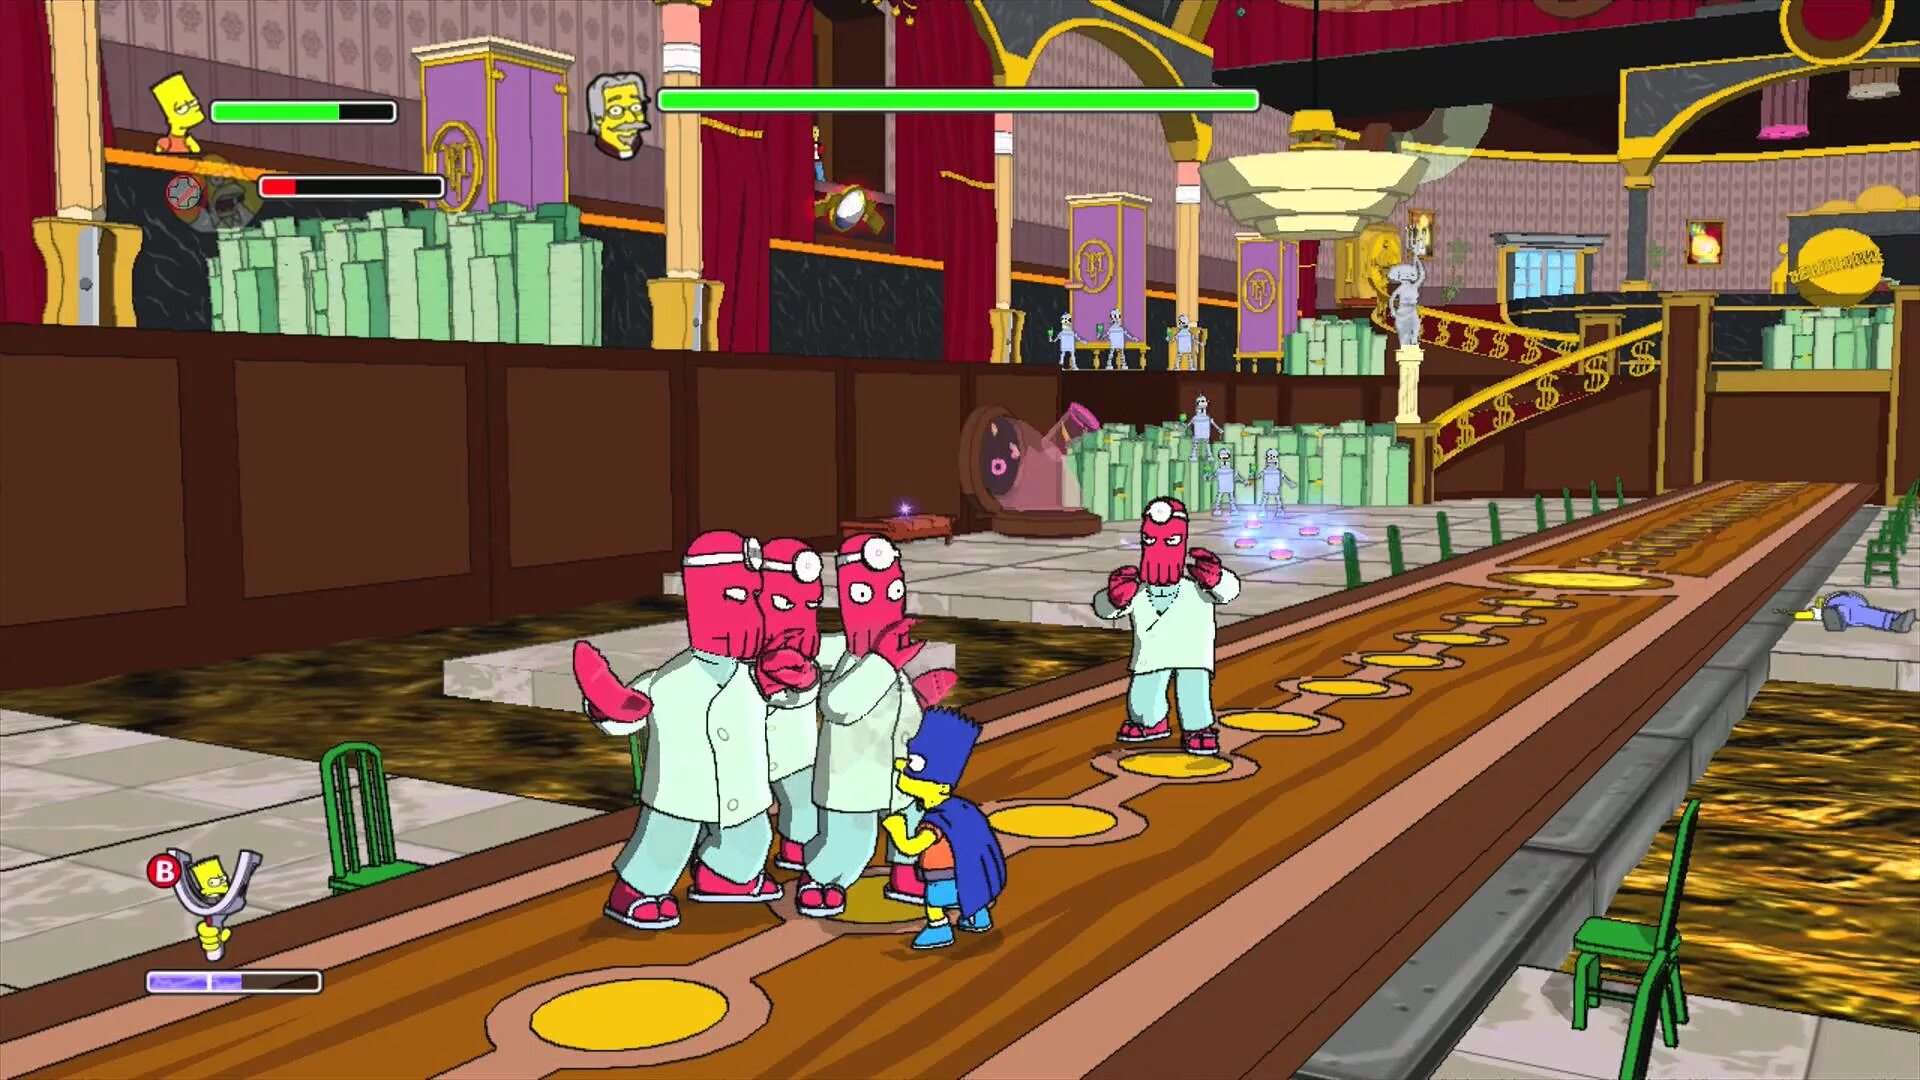 Игры для детей games. Симпсоны игра 2007. Симпсоны на Xbox 360. Симпсоны игра на ps3. The Simpsons game Xbox 360.